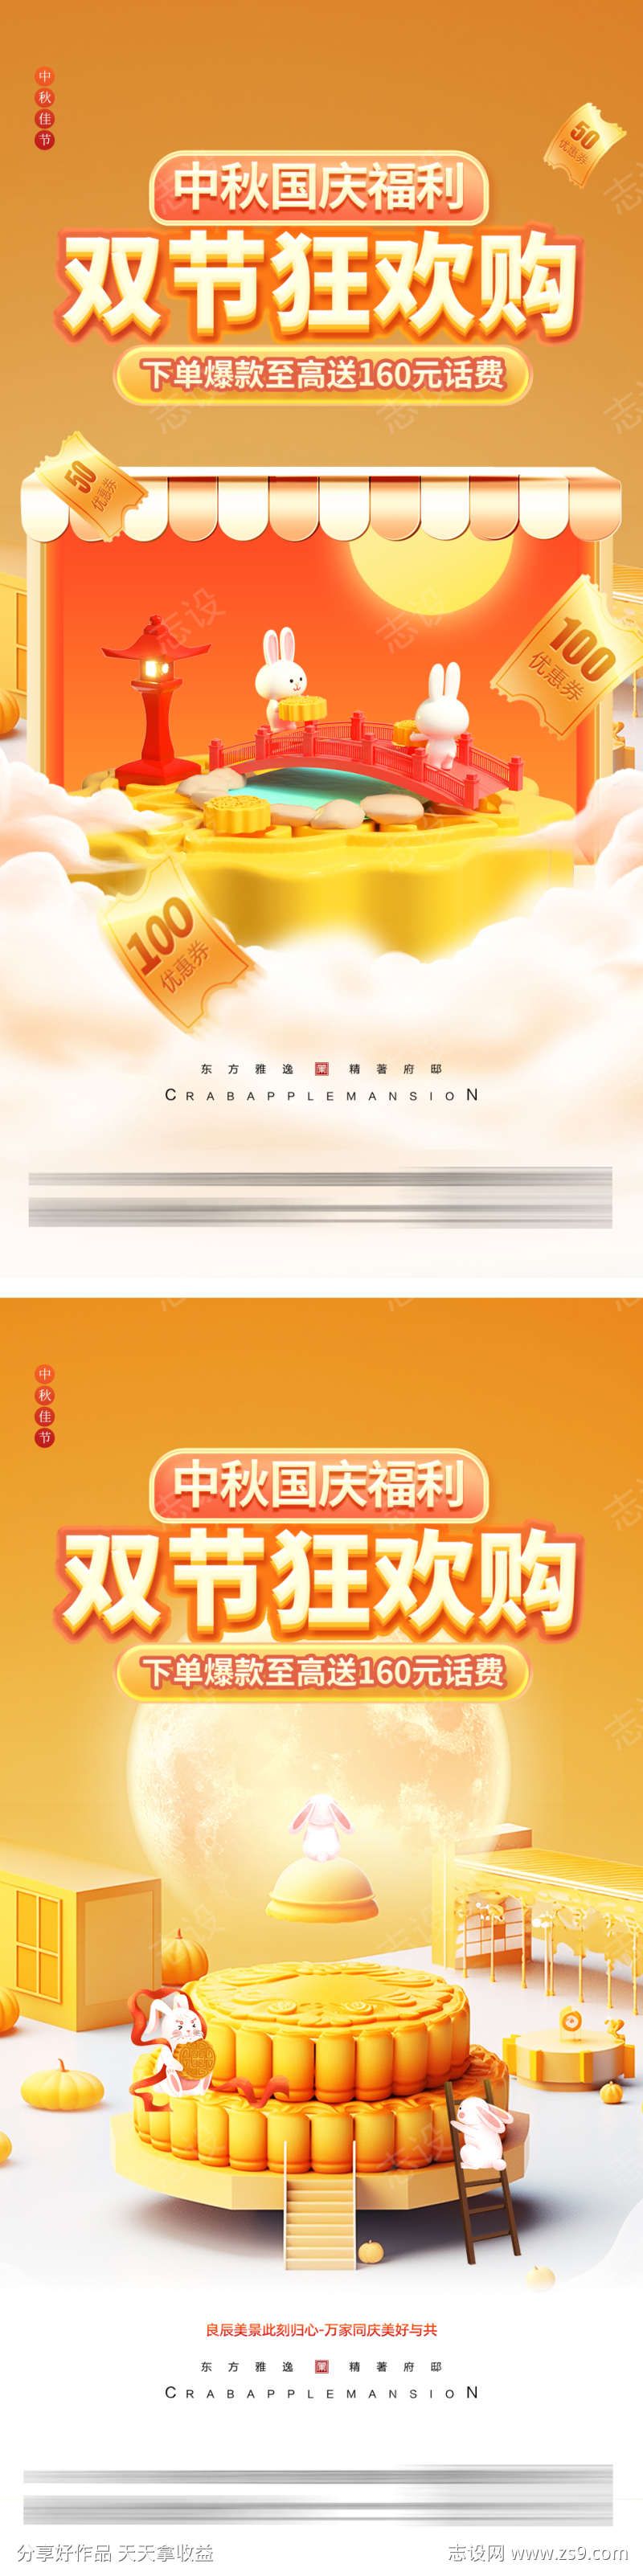 中秋节美食宣传海报